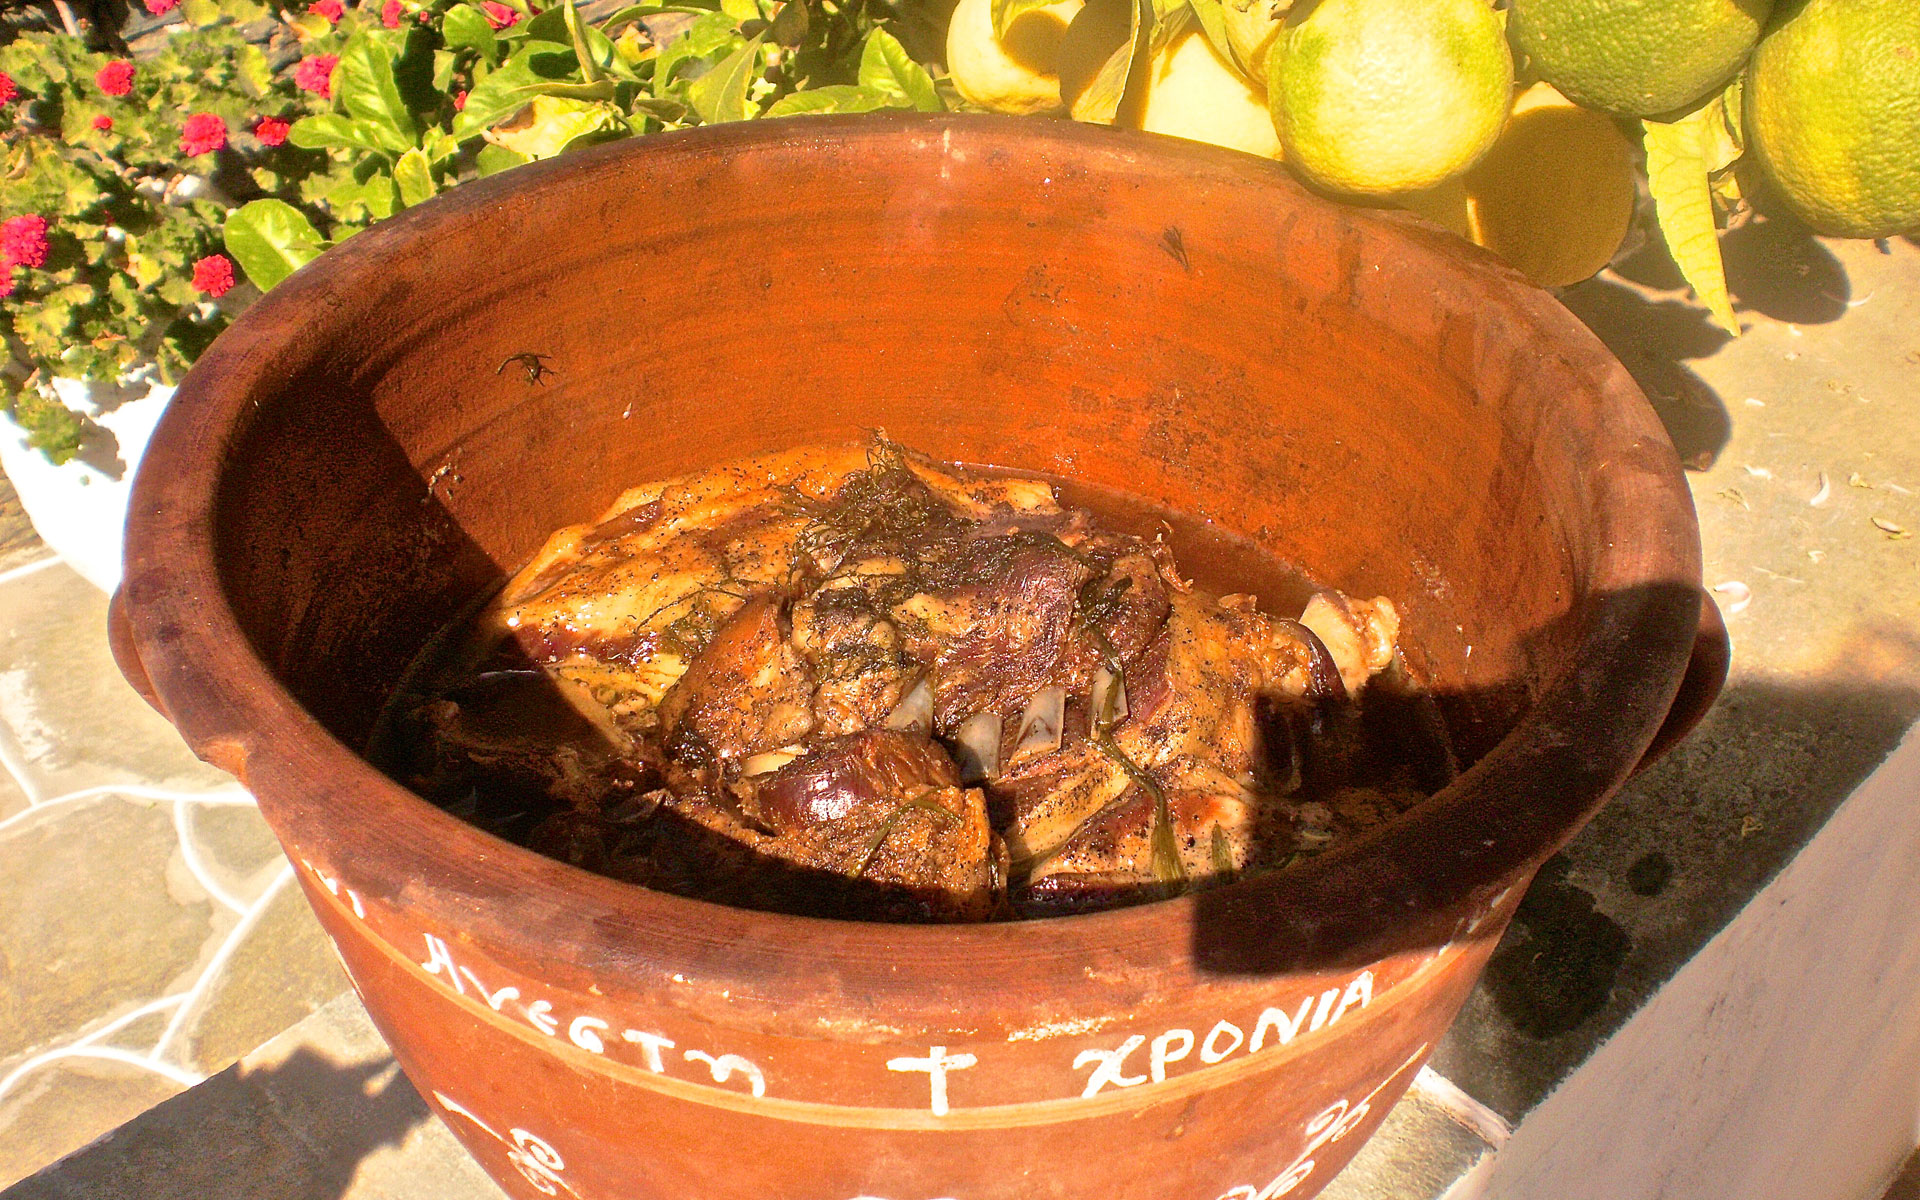 Μαστέλο, το παραδοσιακό πασχαλινό φαγητό της Σίφνου